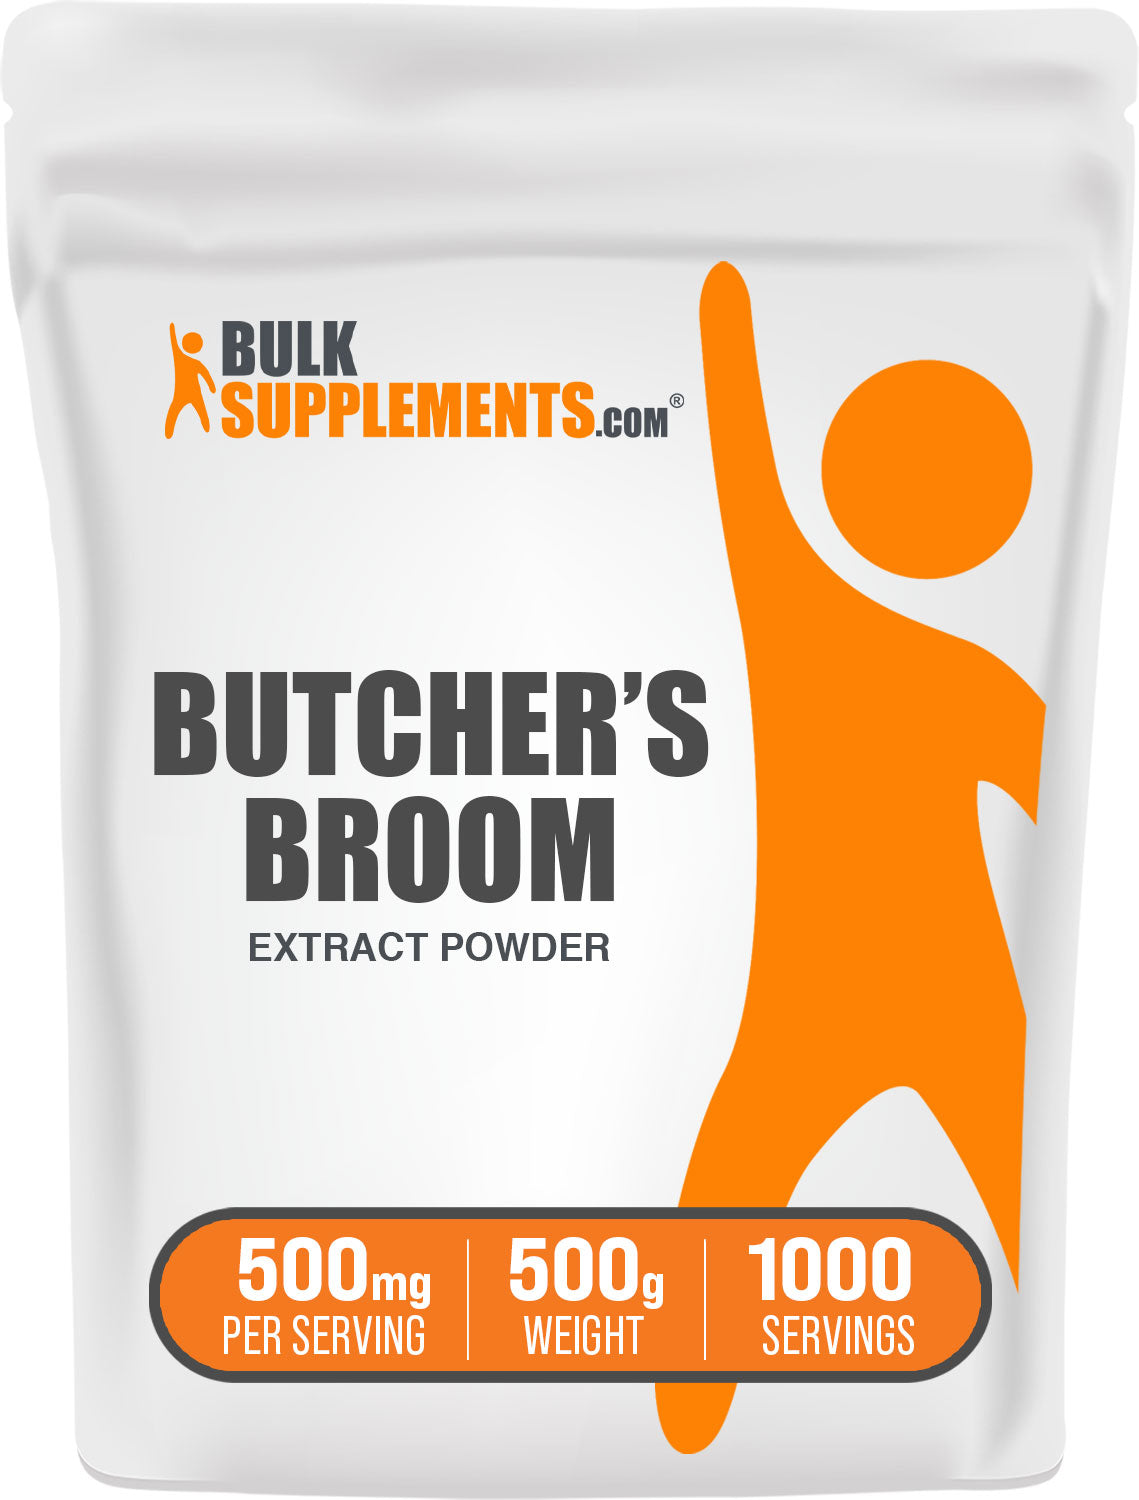 500g of butchers broom